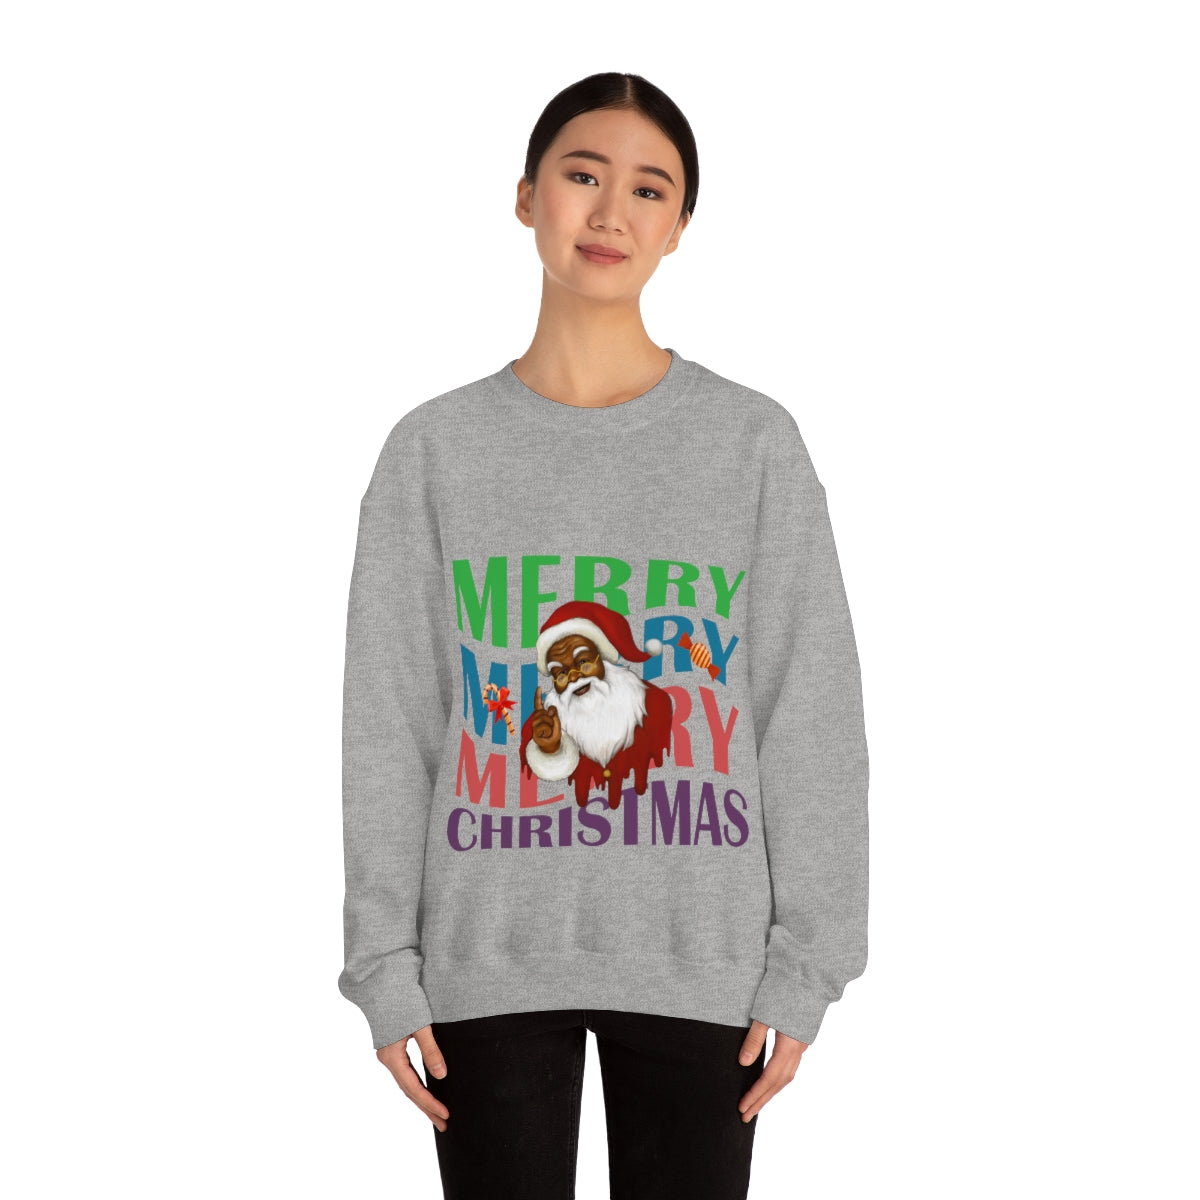 Merry Christmas Unisex Sweatshirts , Sweatshirt , Women Sweatshirt , Men Sweatshirt ,Crewneck Sweatshirt, Merry Merry Merry Christmas Printify